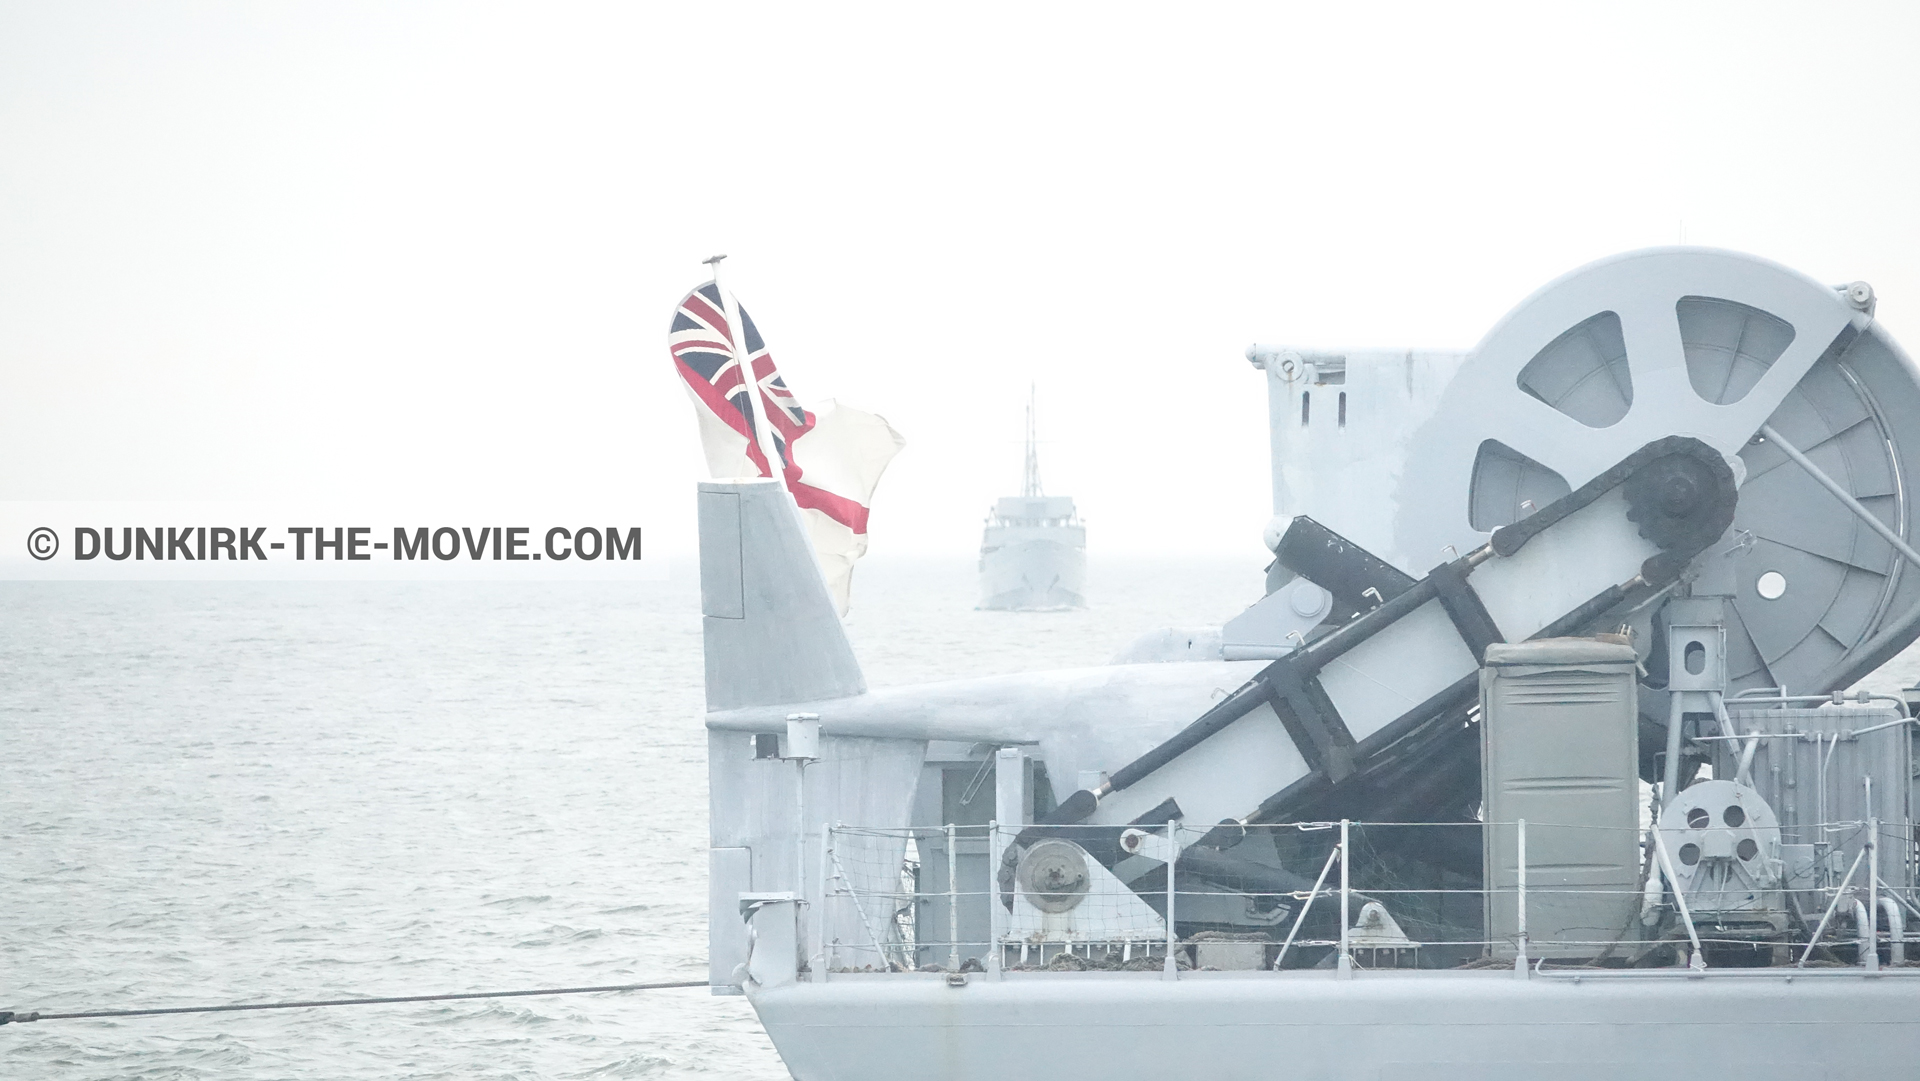 Photo avec mer calme, ciel gris, bateau,  des dessous du Film Dunkerque de Nolan